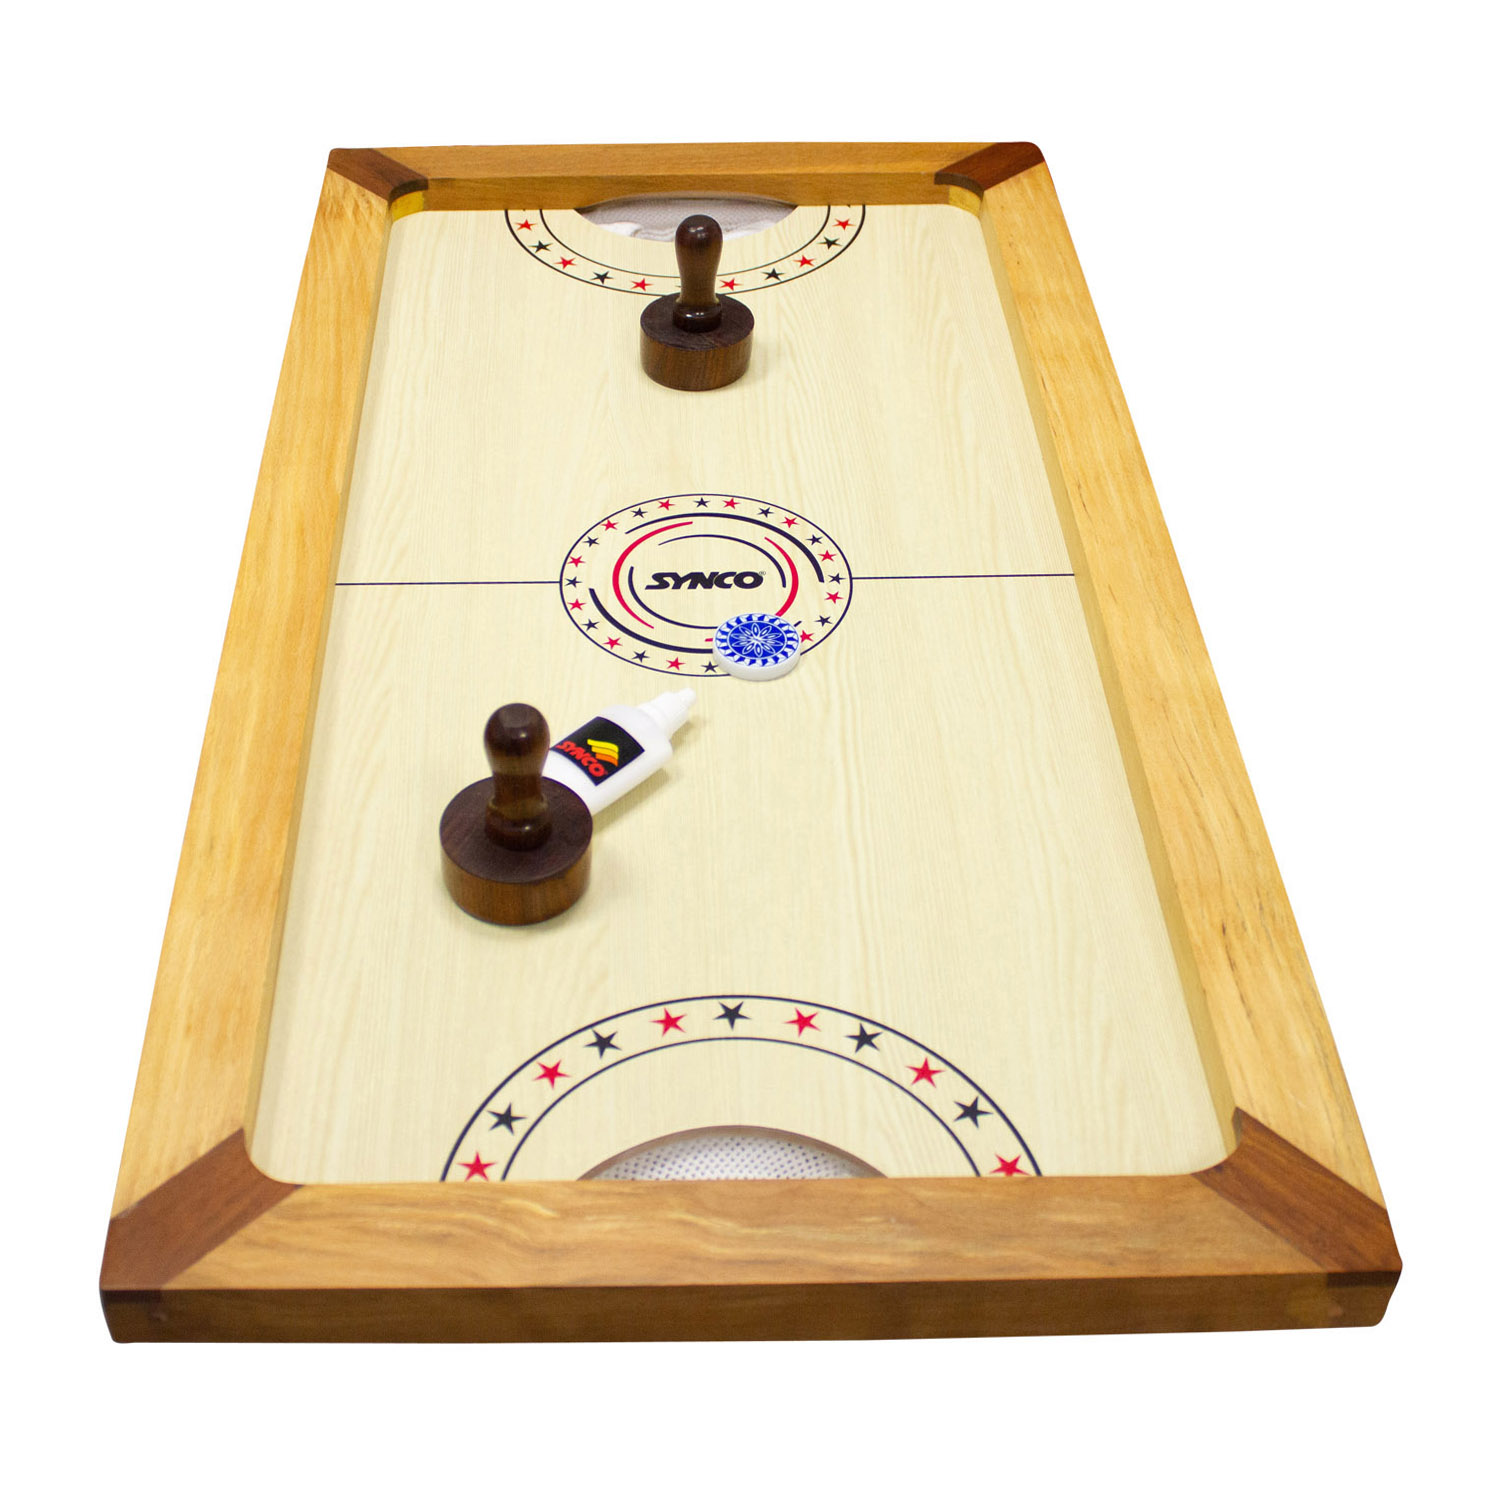 Airhockey Tischhockey Shuffle Puck Spiel aus Holz mit komplettem Zubehör und Gleitpulver - 2910